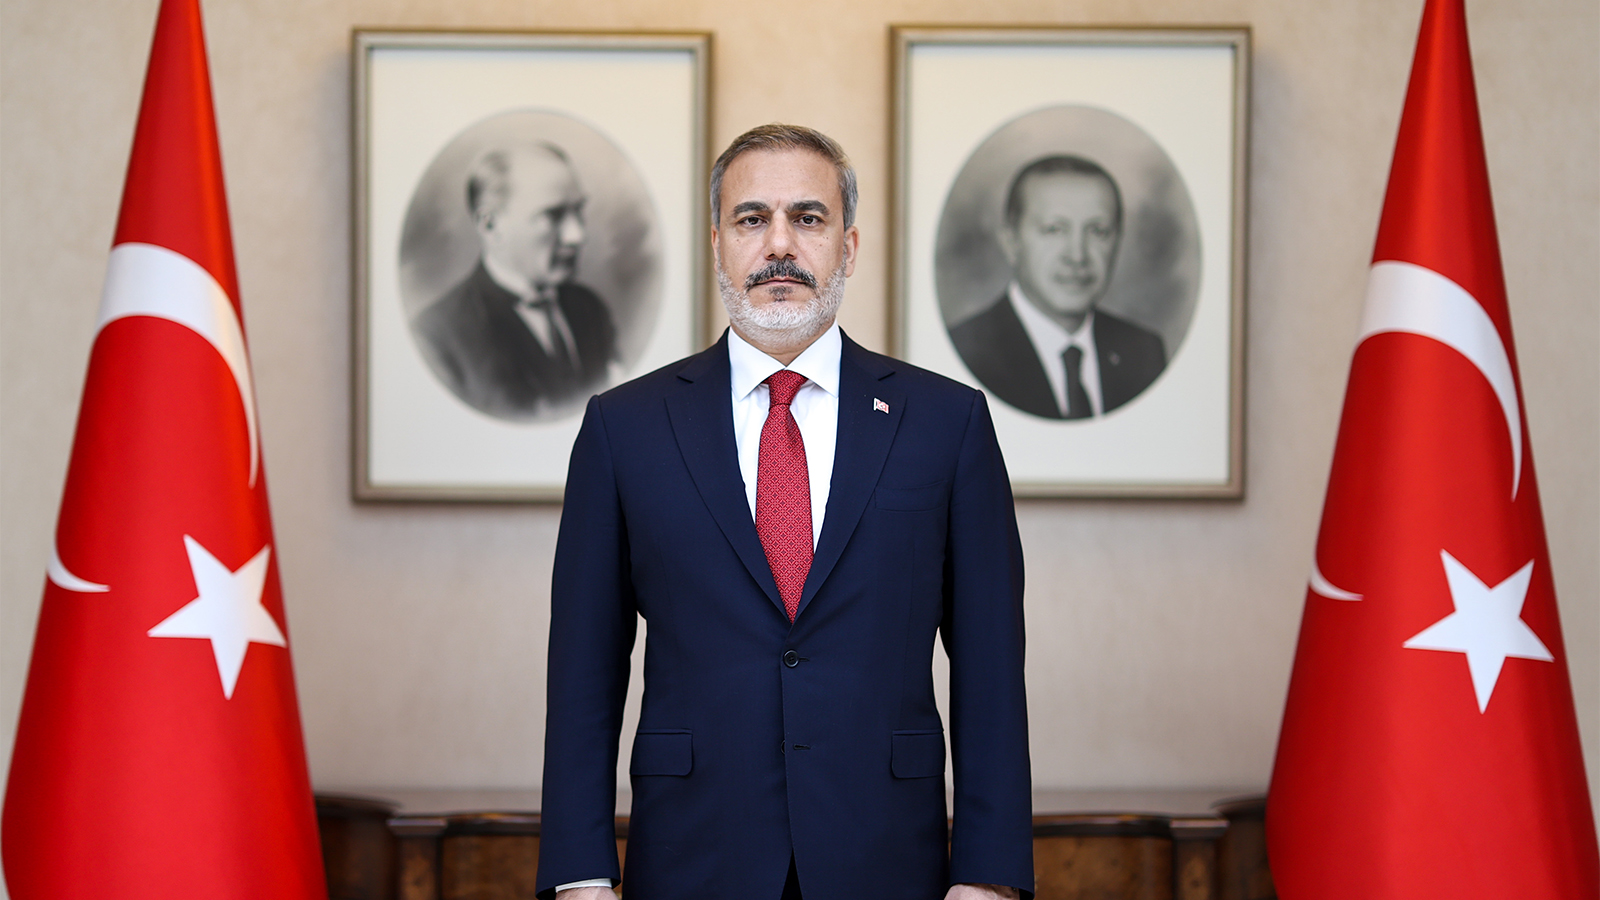 وزير الخارجية التركي الجديد..يستكمل التطبيع مع الاسد؟